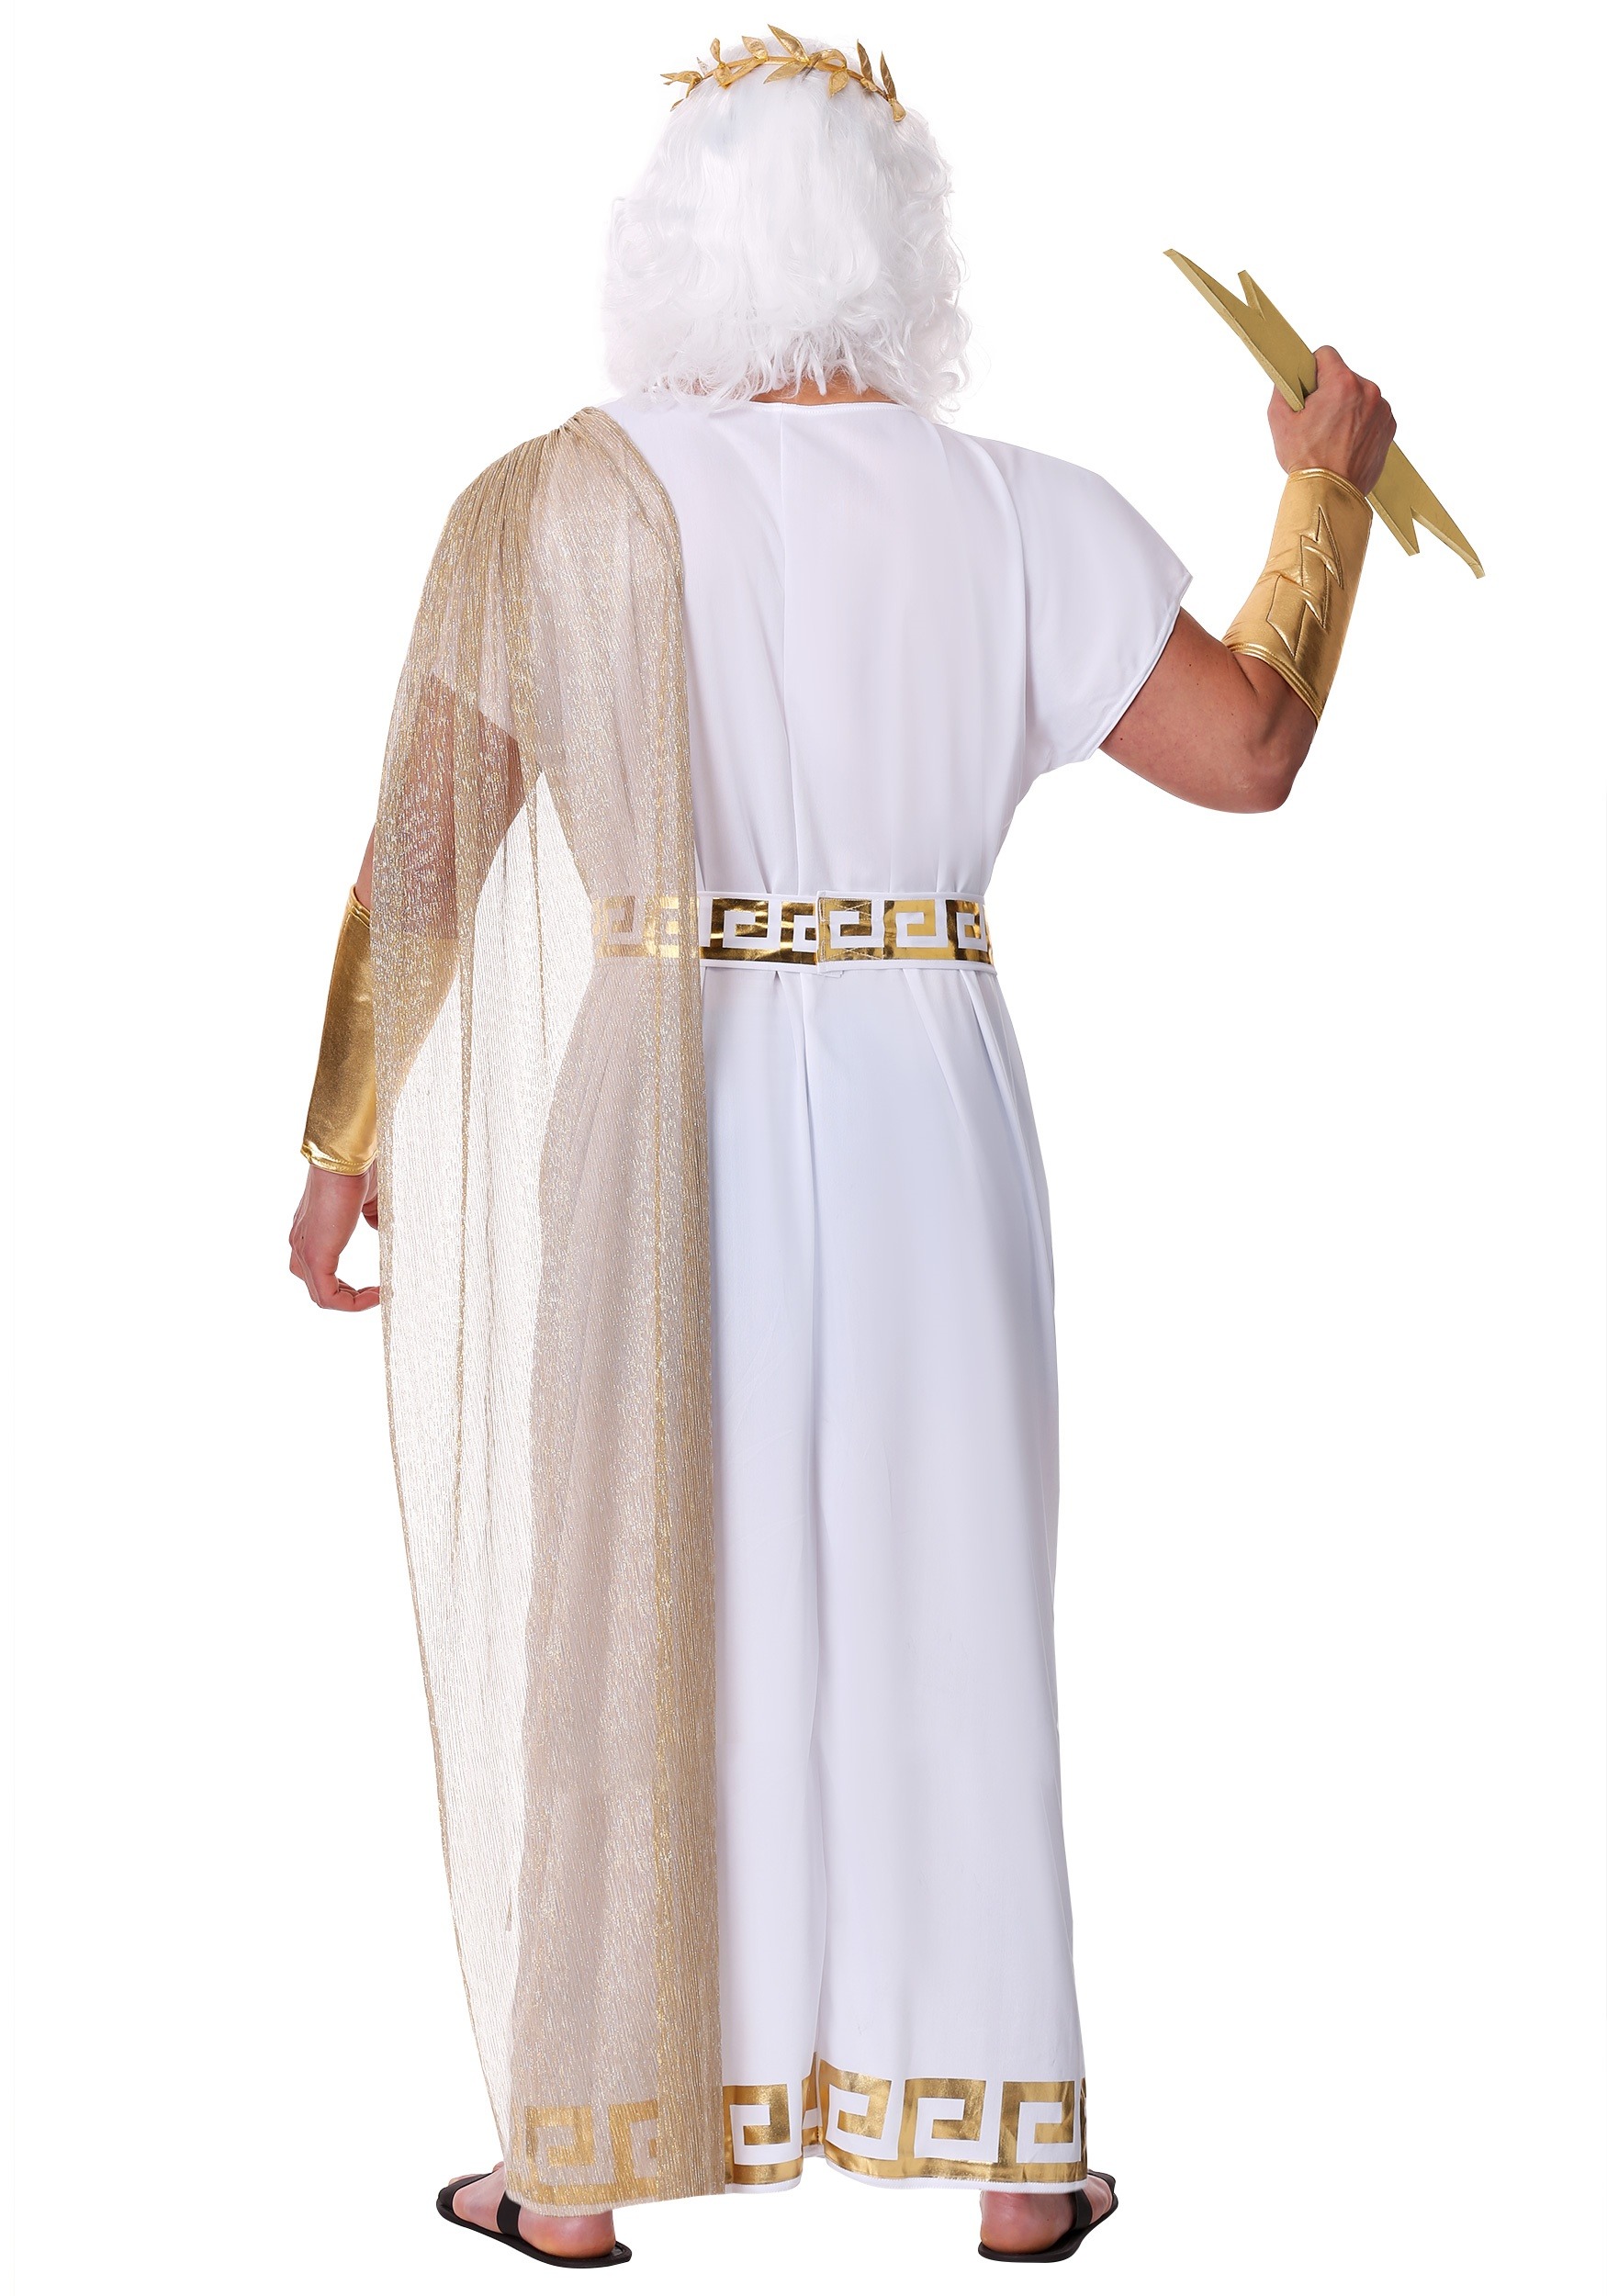 Sui freedom perfume Fantasia masculina de Zeus - Men's Zeus Costume